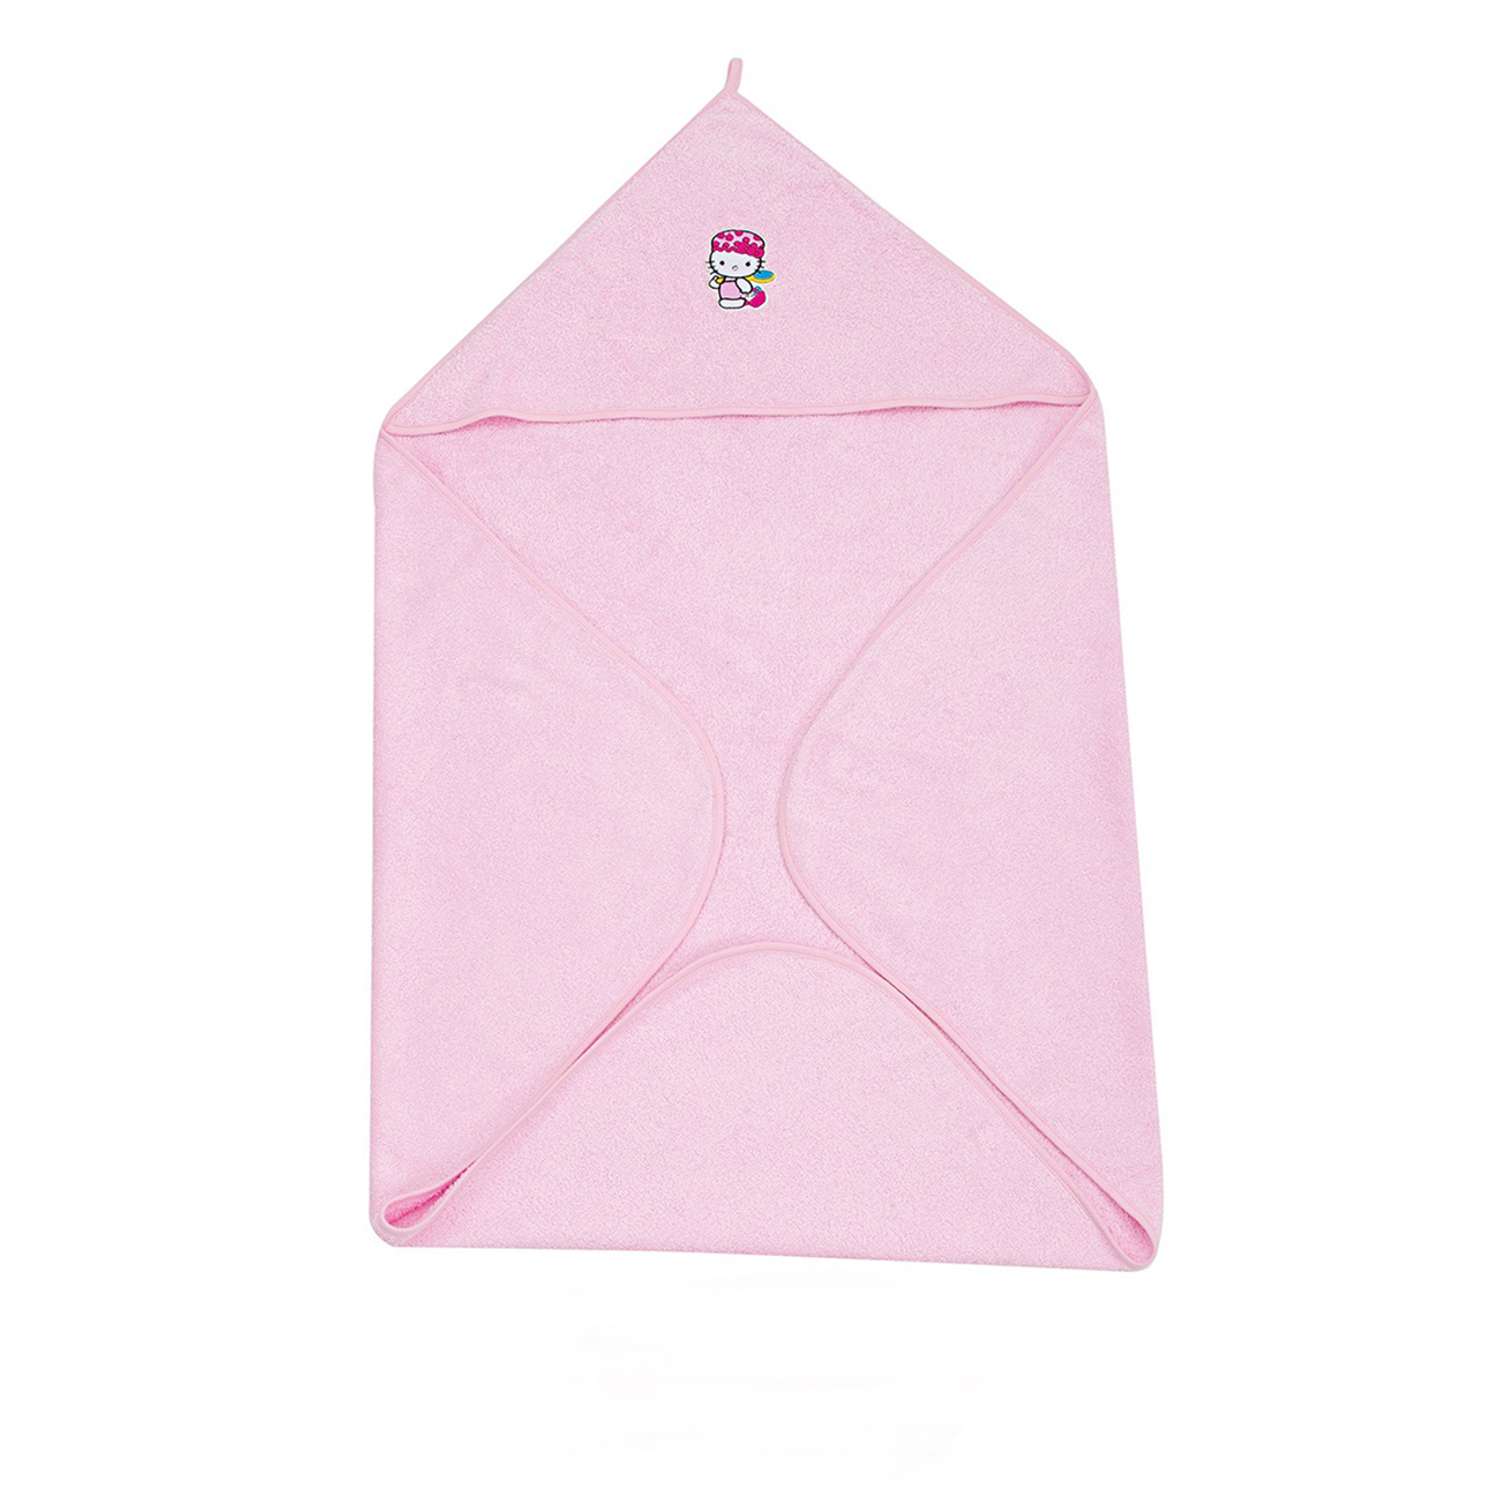 Полотенце Forsalon с уголком махровое 110х110см цвет розовый - фото 1